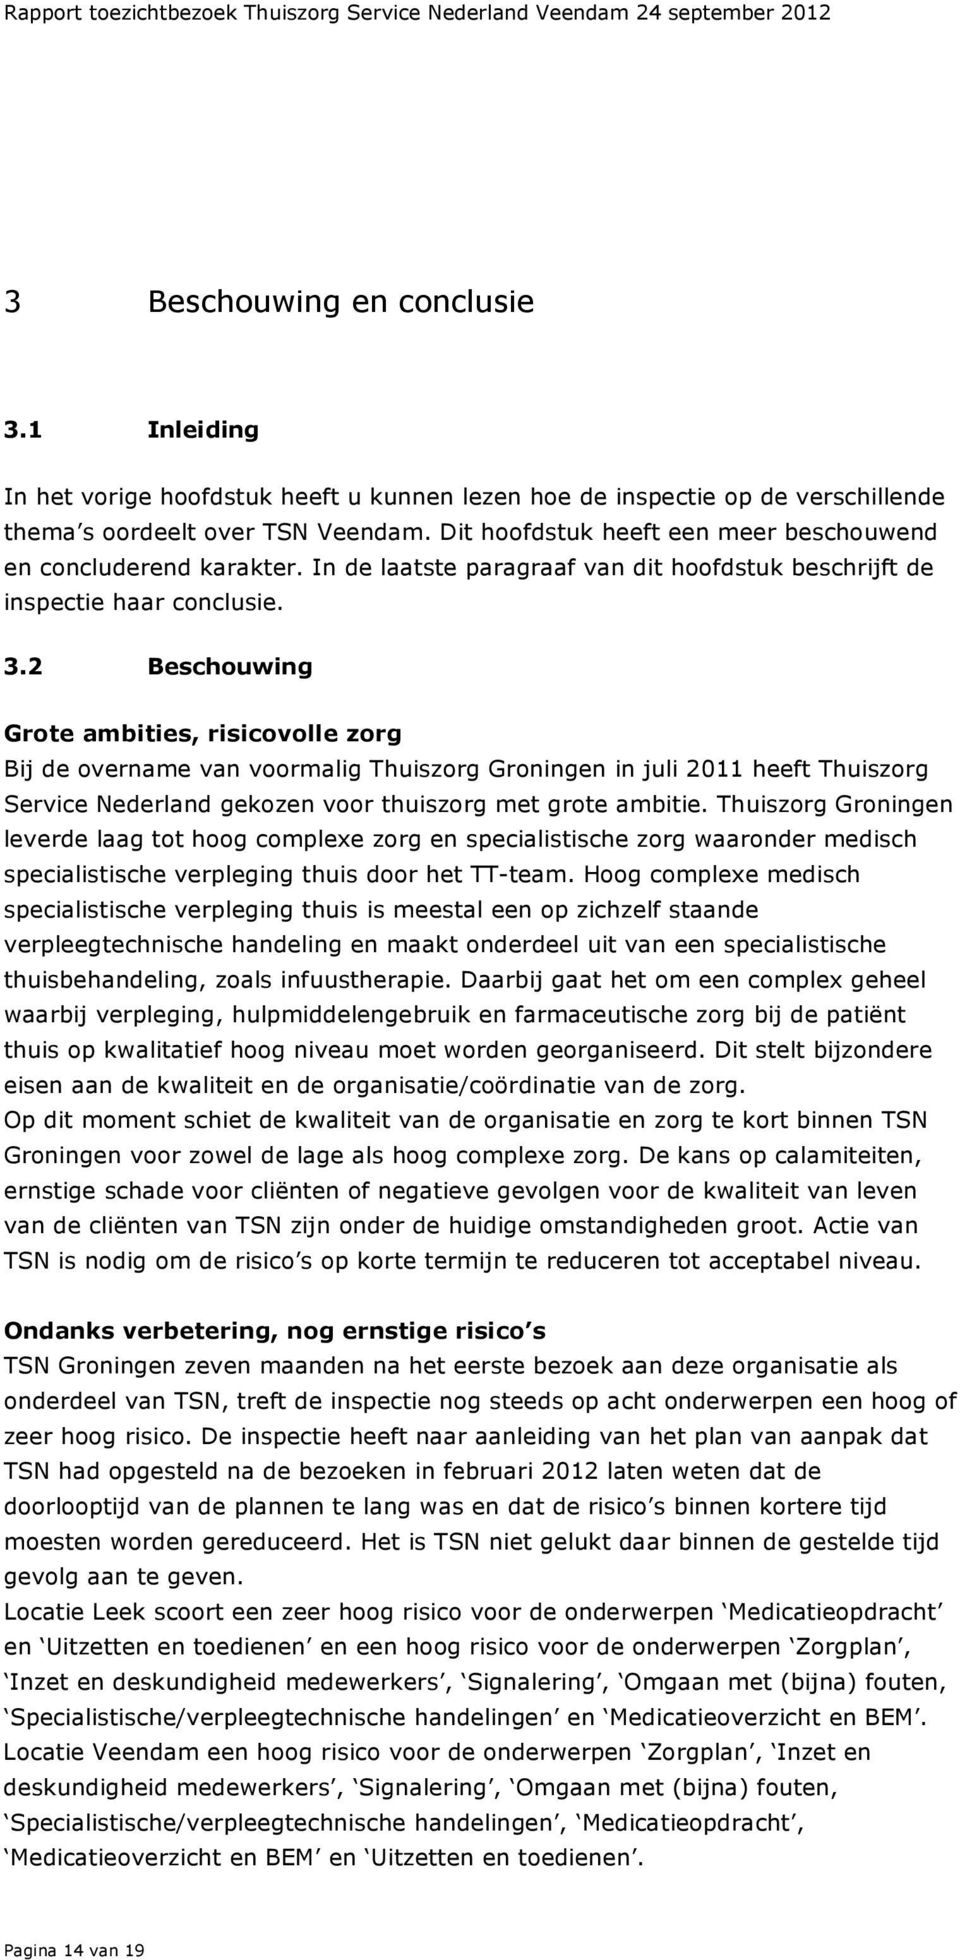 2 Beschouwing Grote ambities, volle zorg Bij de overname van voormalig Thuiszorg Groningen in juli 2011 heeft Thuiszorg Service Nederland gekozen voor thuiszorg met grote ambitie.